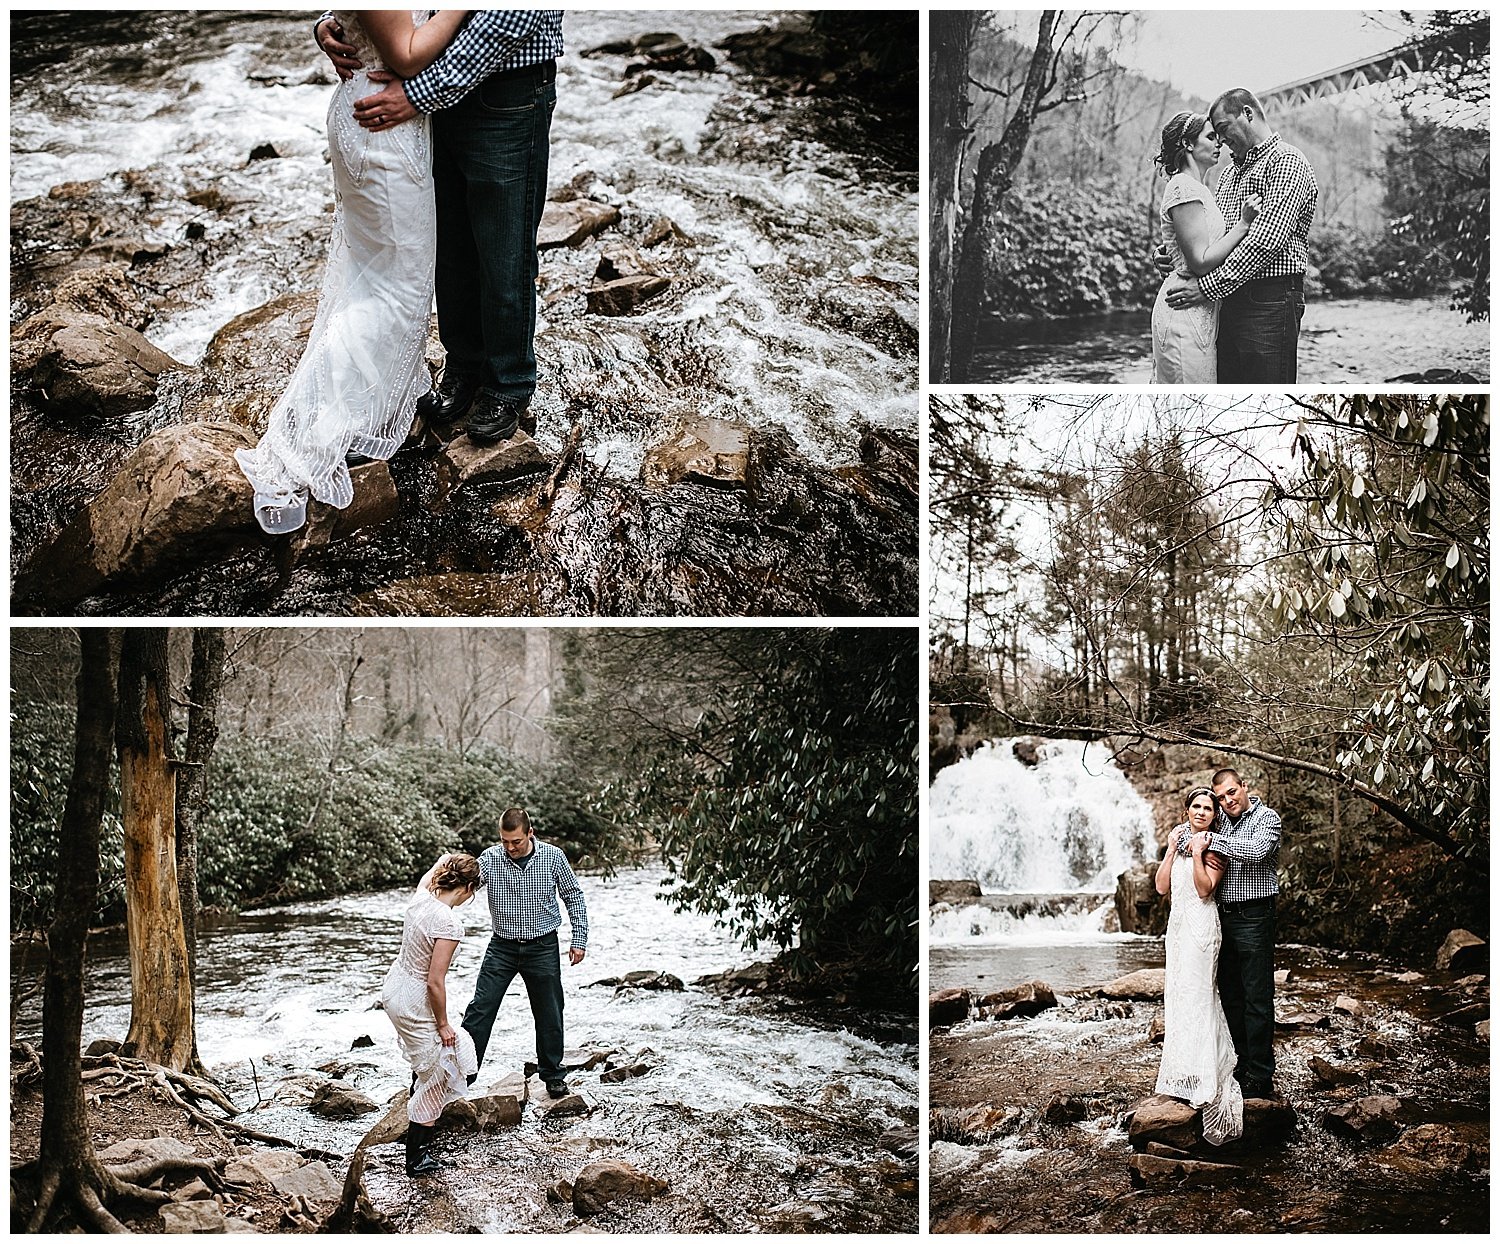 NEPA-Wedding-Engagement-photographer-hickory-run-state-park-hawk-falls-elopement_0032.jpg